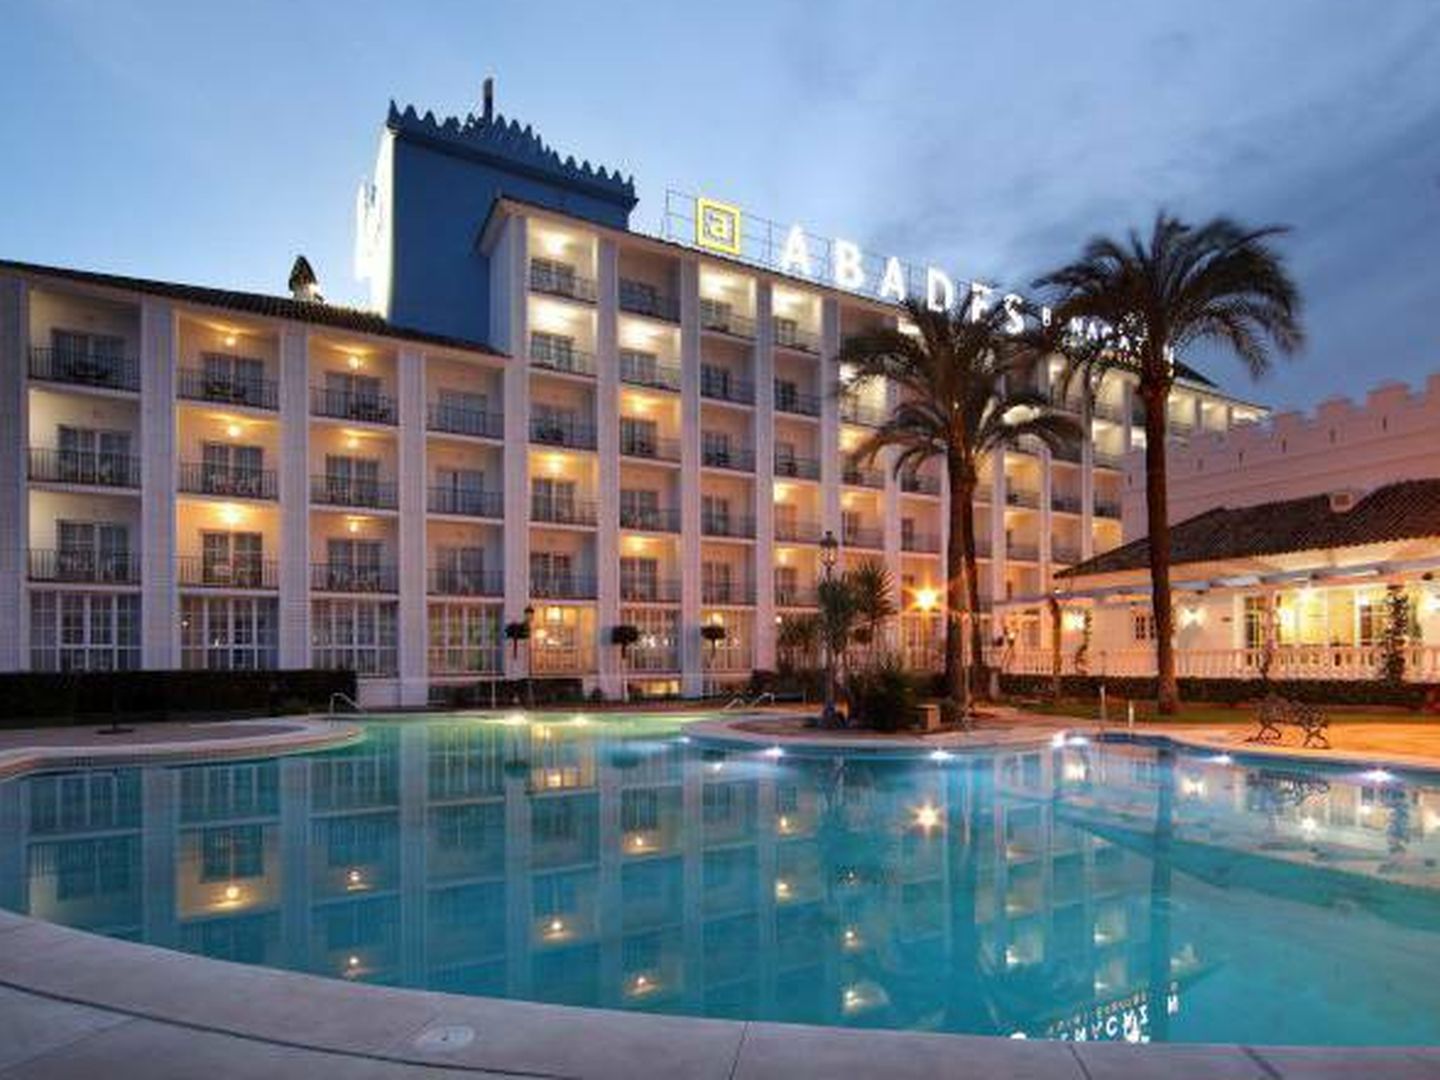 El hotel Abades Benacazón con su piscina exterior. (Abades)